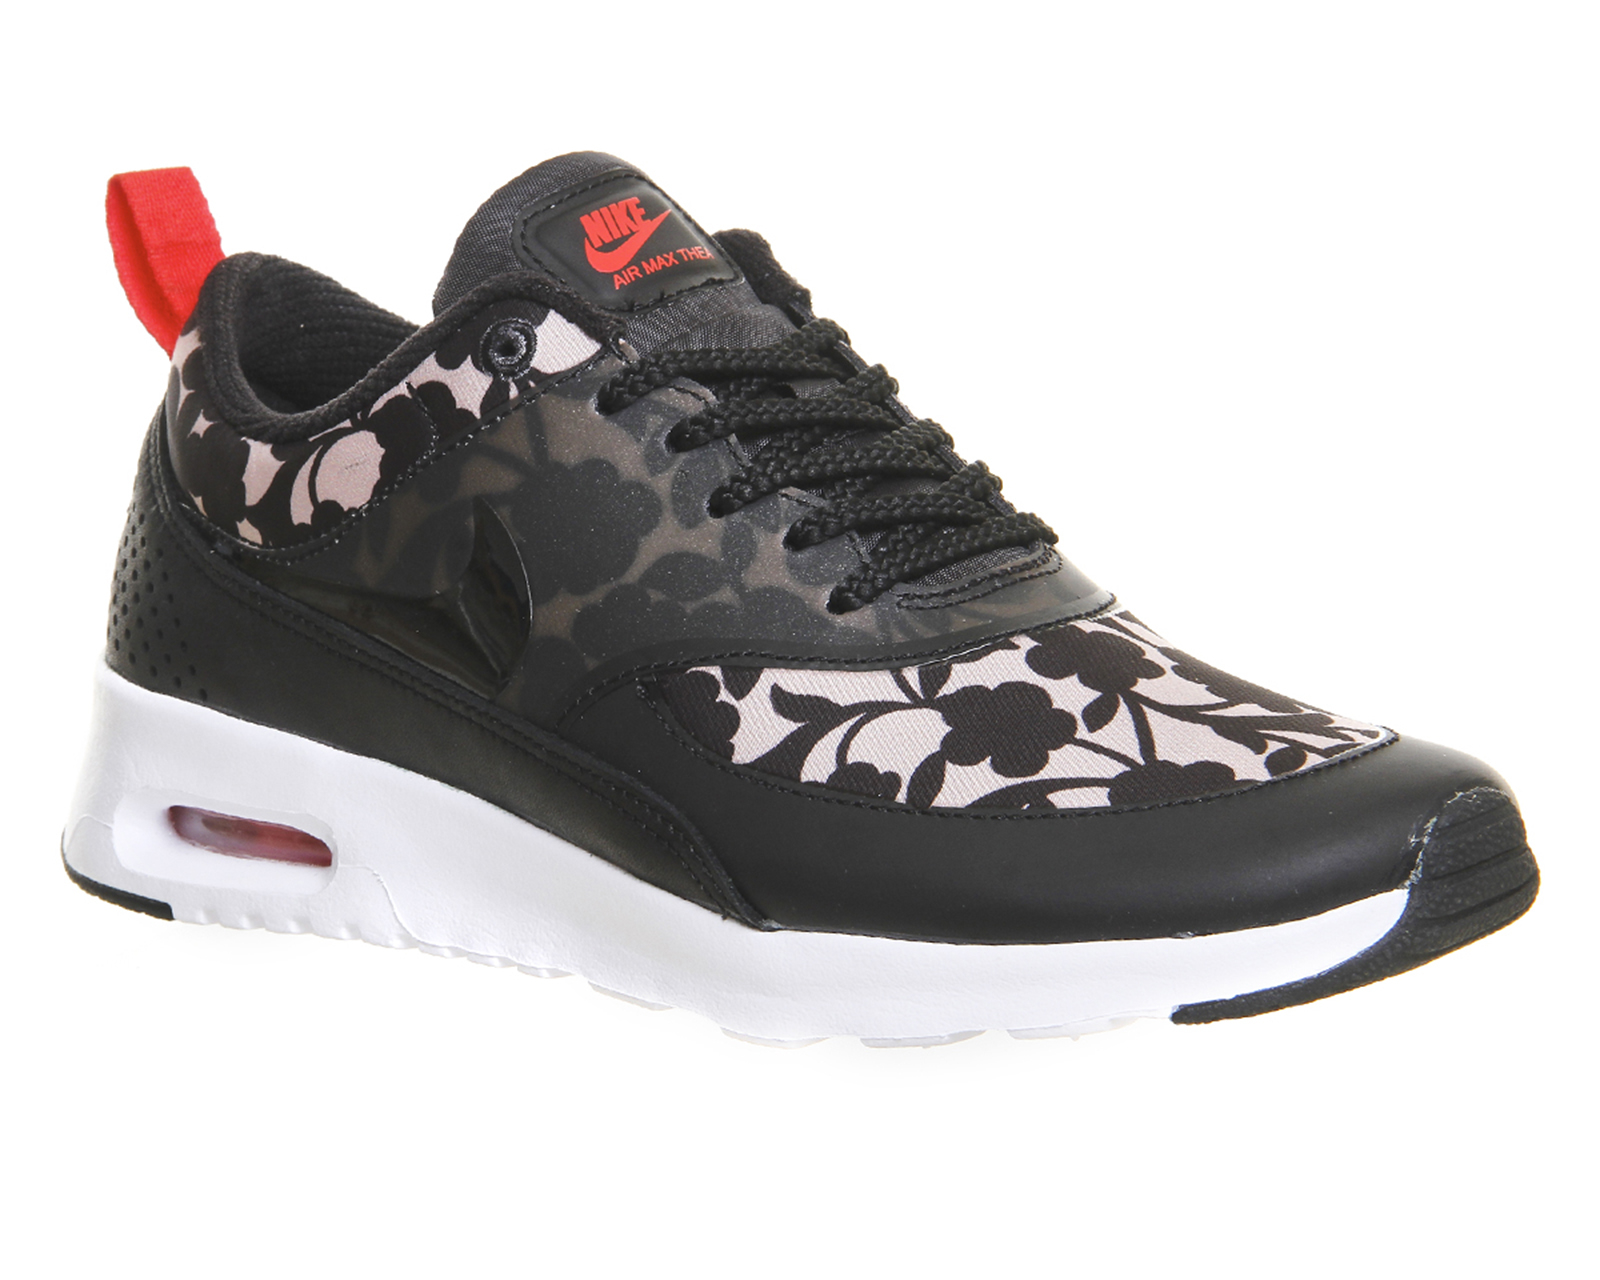 Nike Air Max Thea Floral-Print Low-Top Sneakers in Tan (Brown) - Lyst